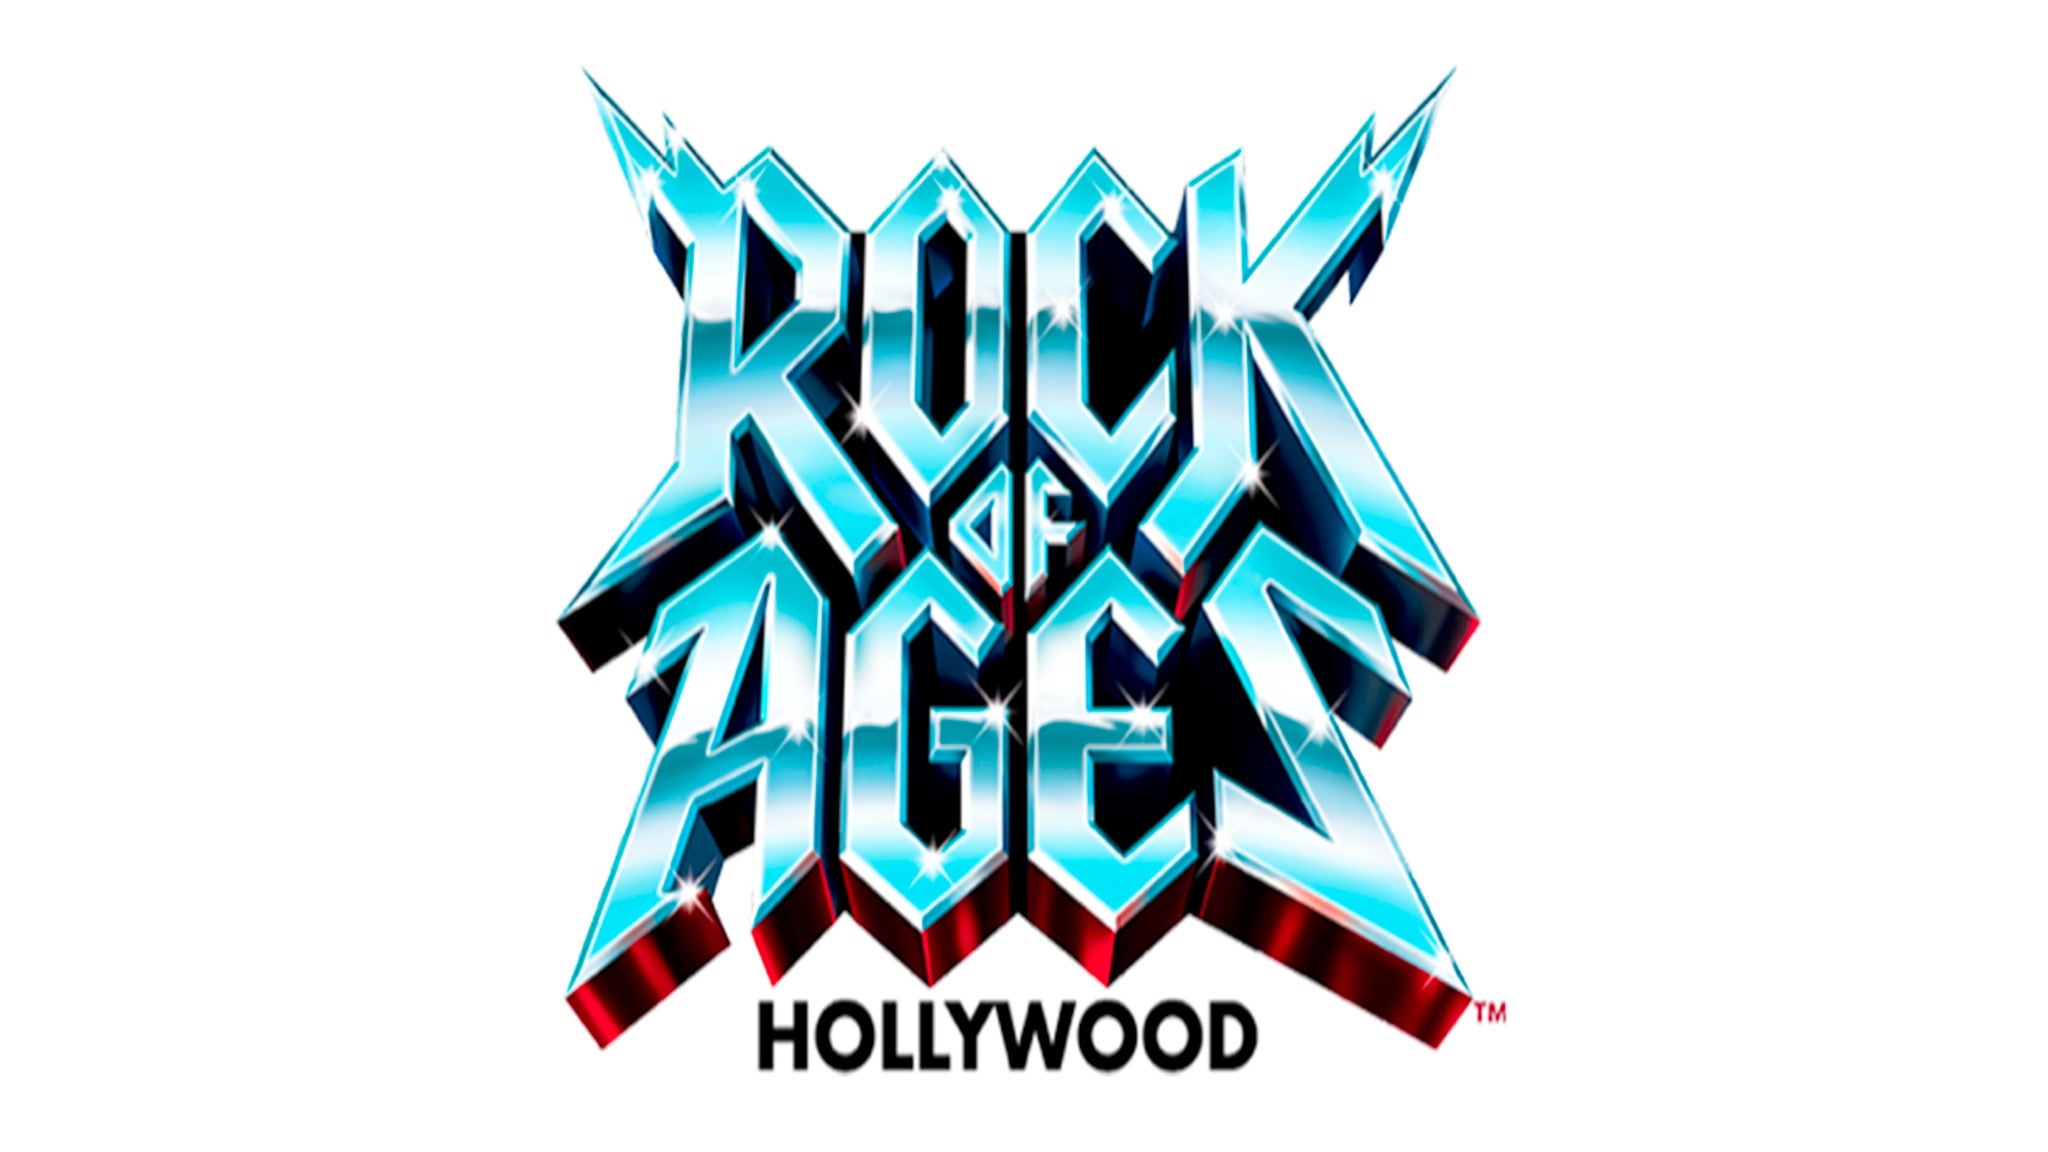 Rock Of Ages (Hollywood) presale information on freepresalepasswords.com